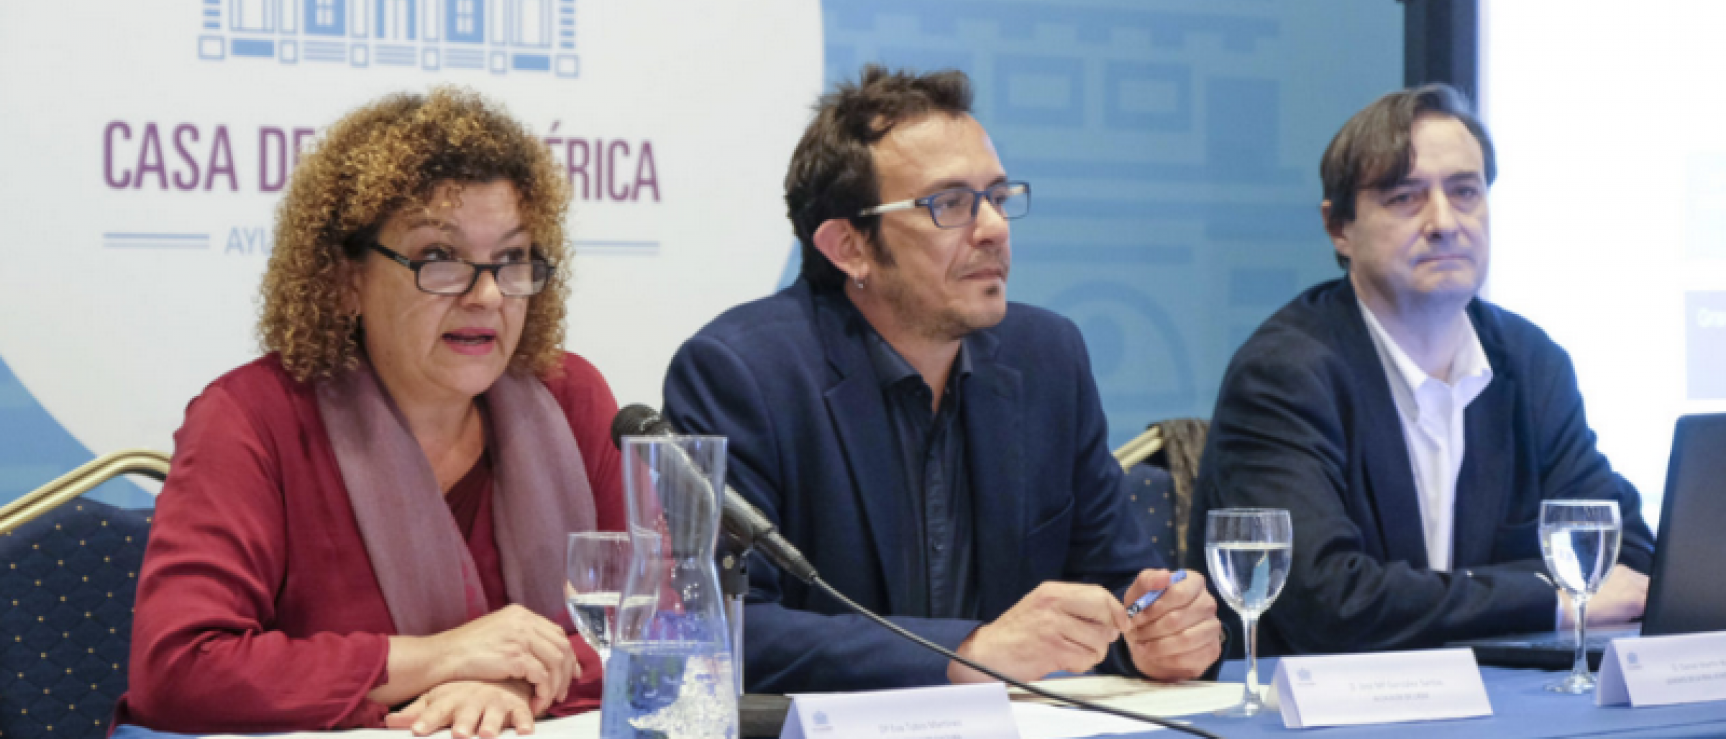 De izquierda a derecha: Eva Tubío, concejala de Cultura; José María González, alcalde de Cádiz, y Daniel Martín, gerente de la RAE.